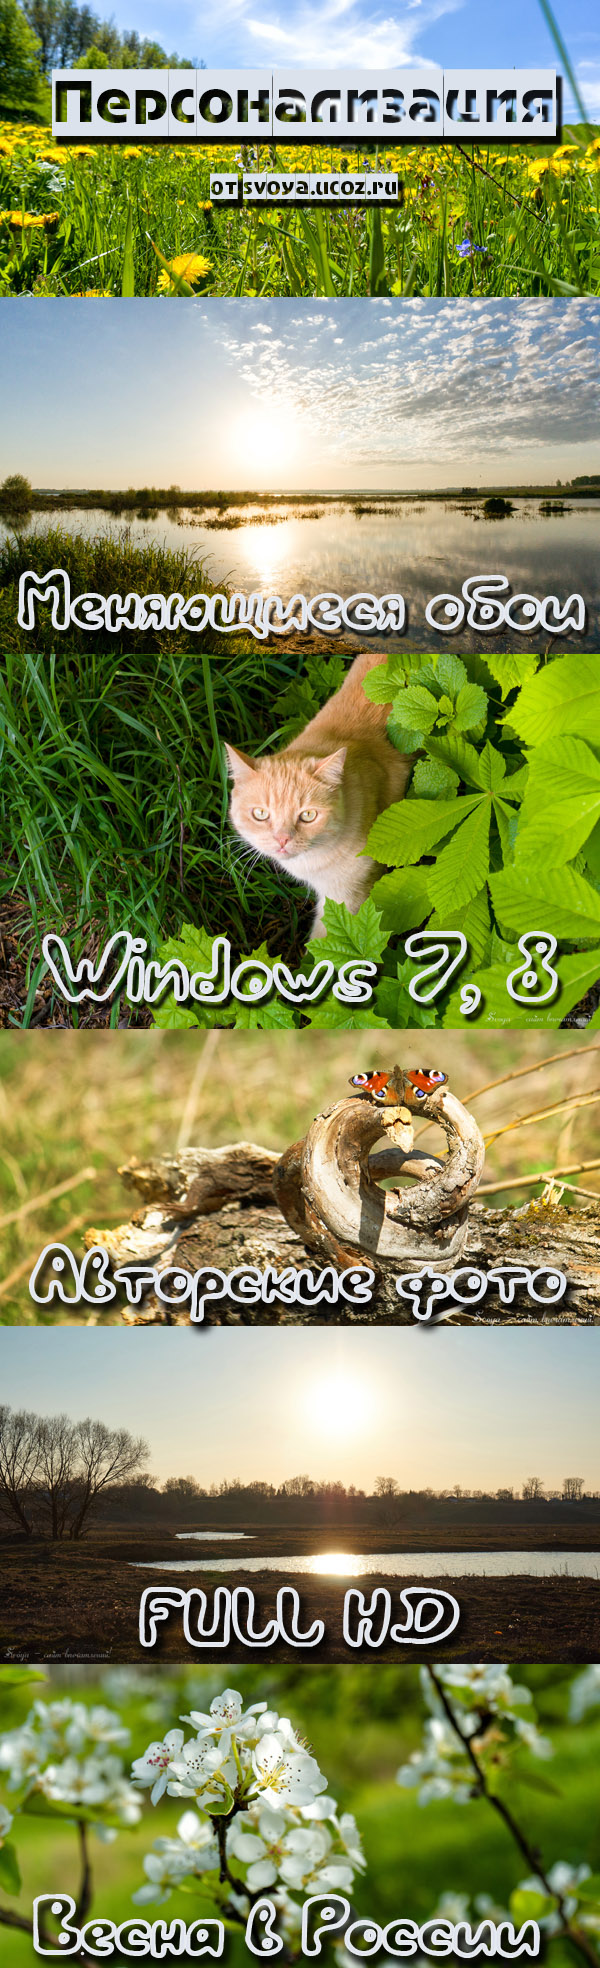 Меняющиеся обои Windows 7, 8 Весна в России - Svoya Spring Theme